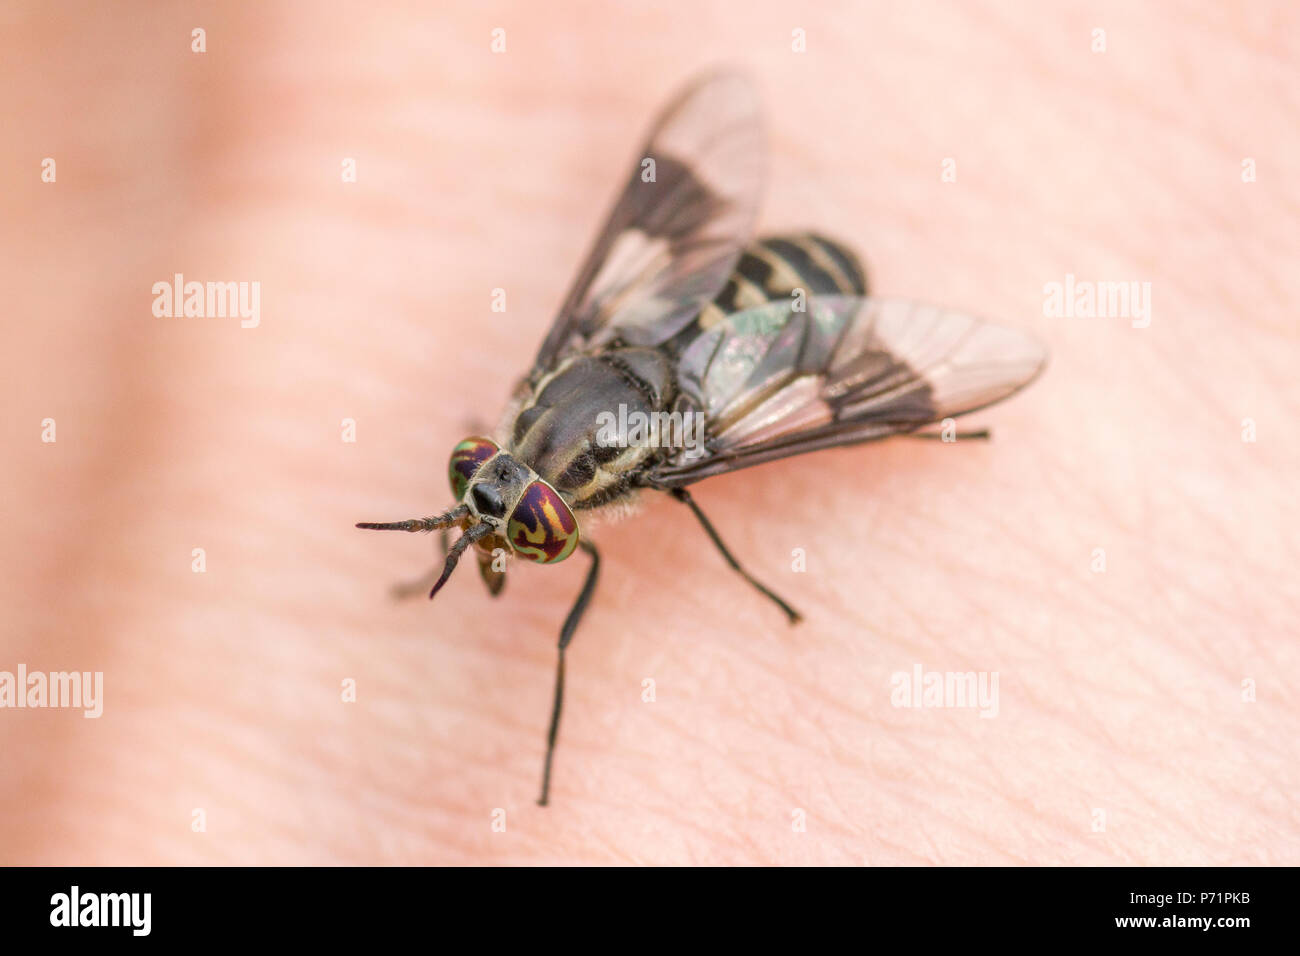 Un cervo fly (Chrysops sp.) circa a mordere una mano umana. Foto Stock